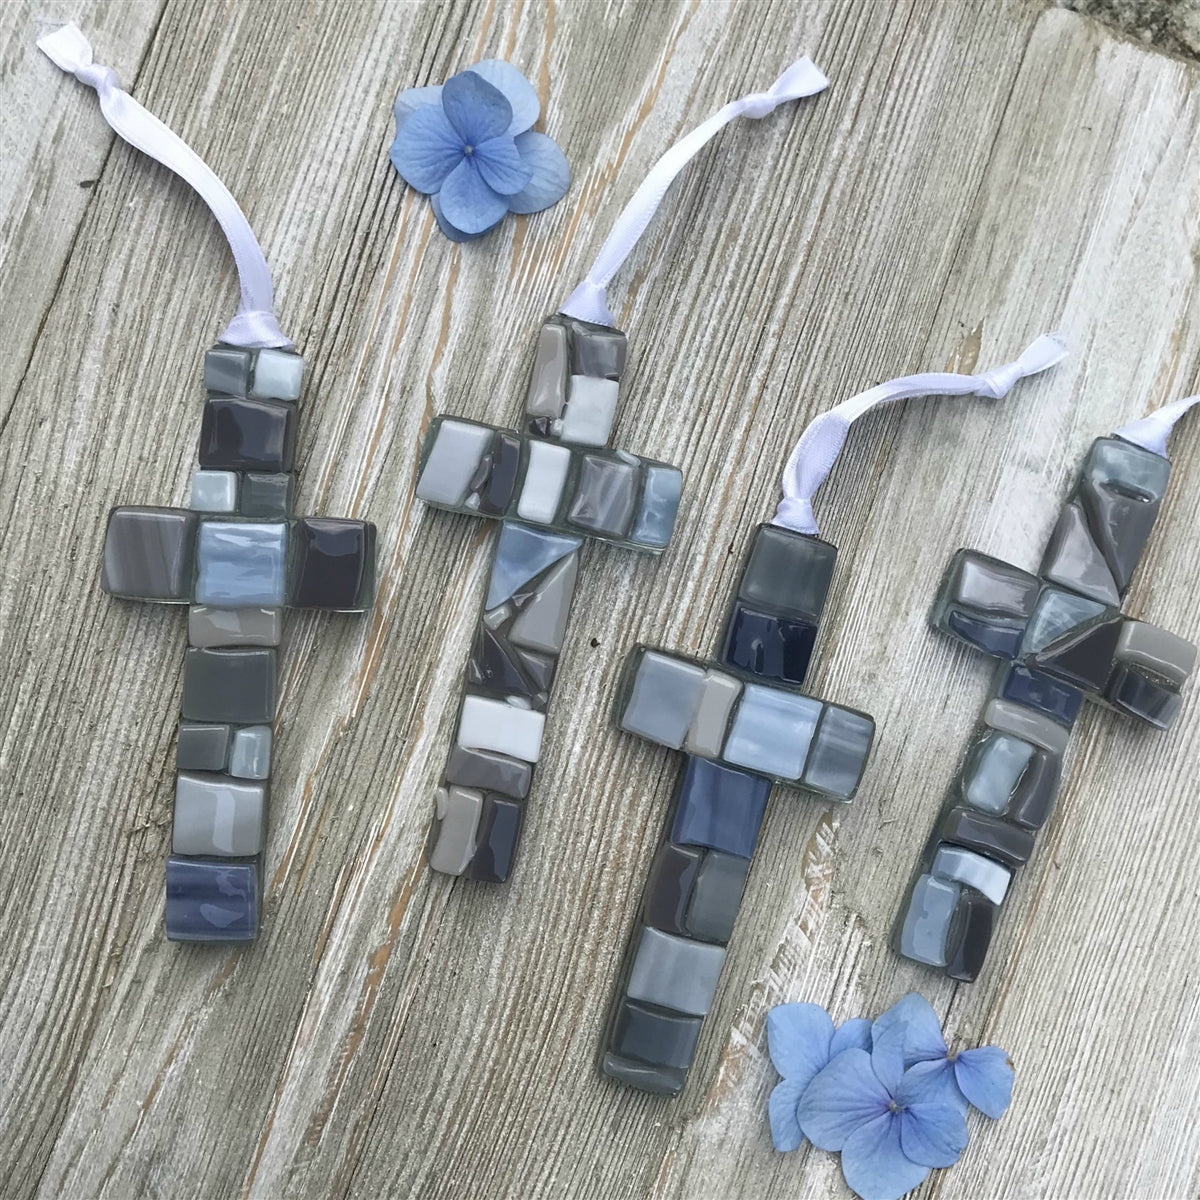 Wedding Anniversary Gift: Handmade Mosaic Glass Cross